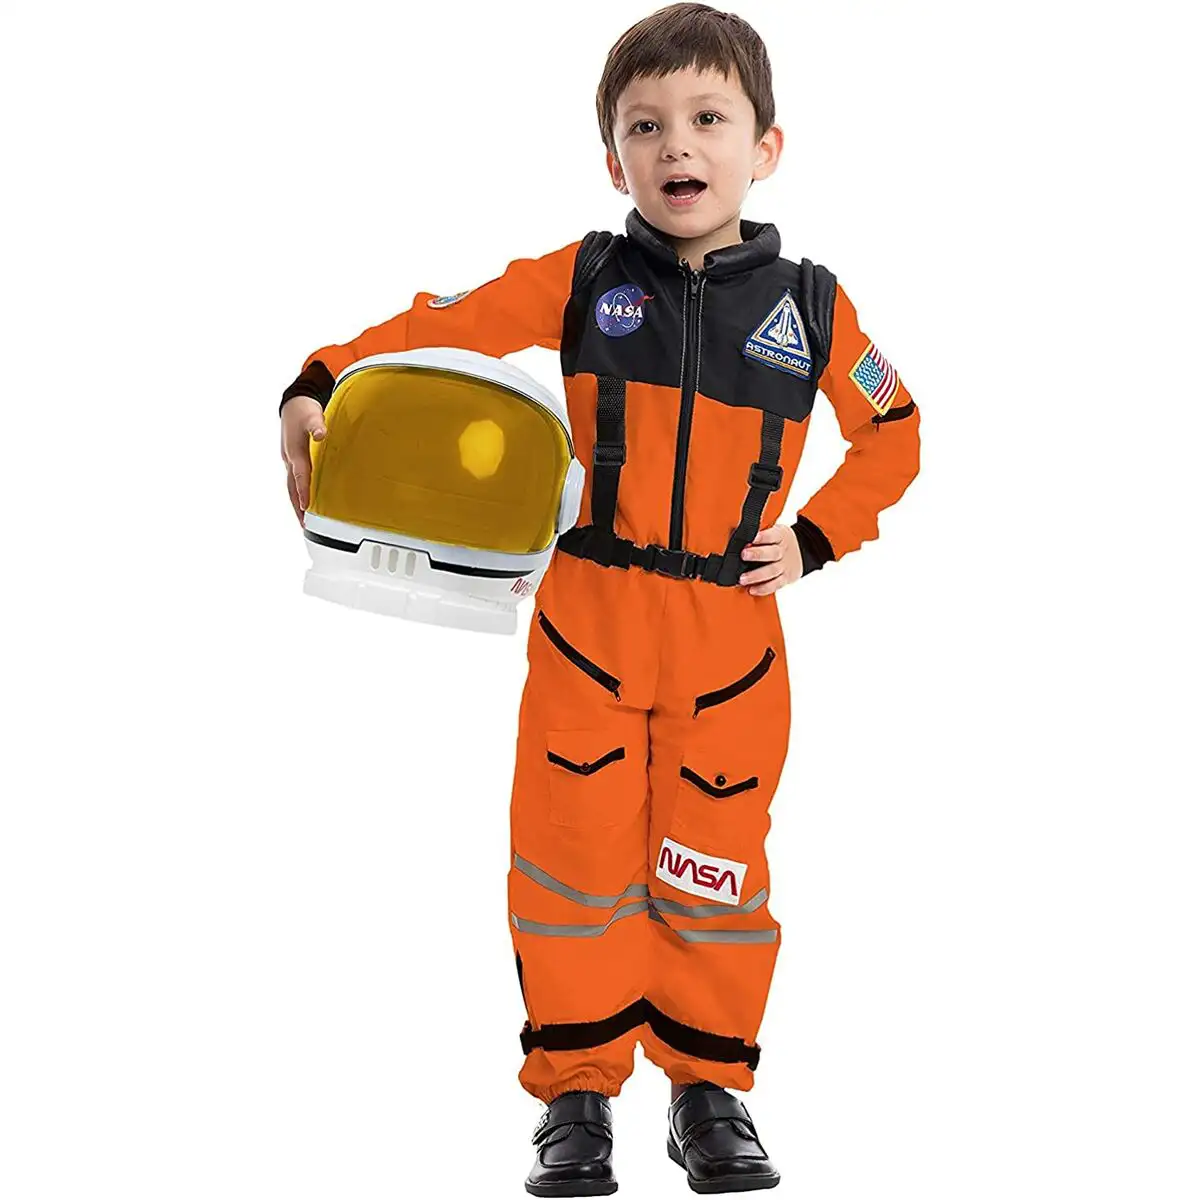 Deguisement pour enfants astronaute blanc reconditionne d _8090. DIAYTAR SENEGAL - Où la Qualité est Notre Engagement. Explorez notre boutique en ligne pour découvrir des produits conçus pour vous apporter satisfaction et plaisir.